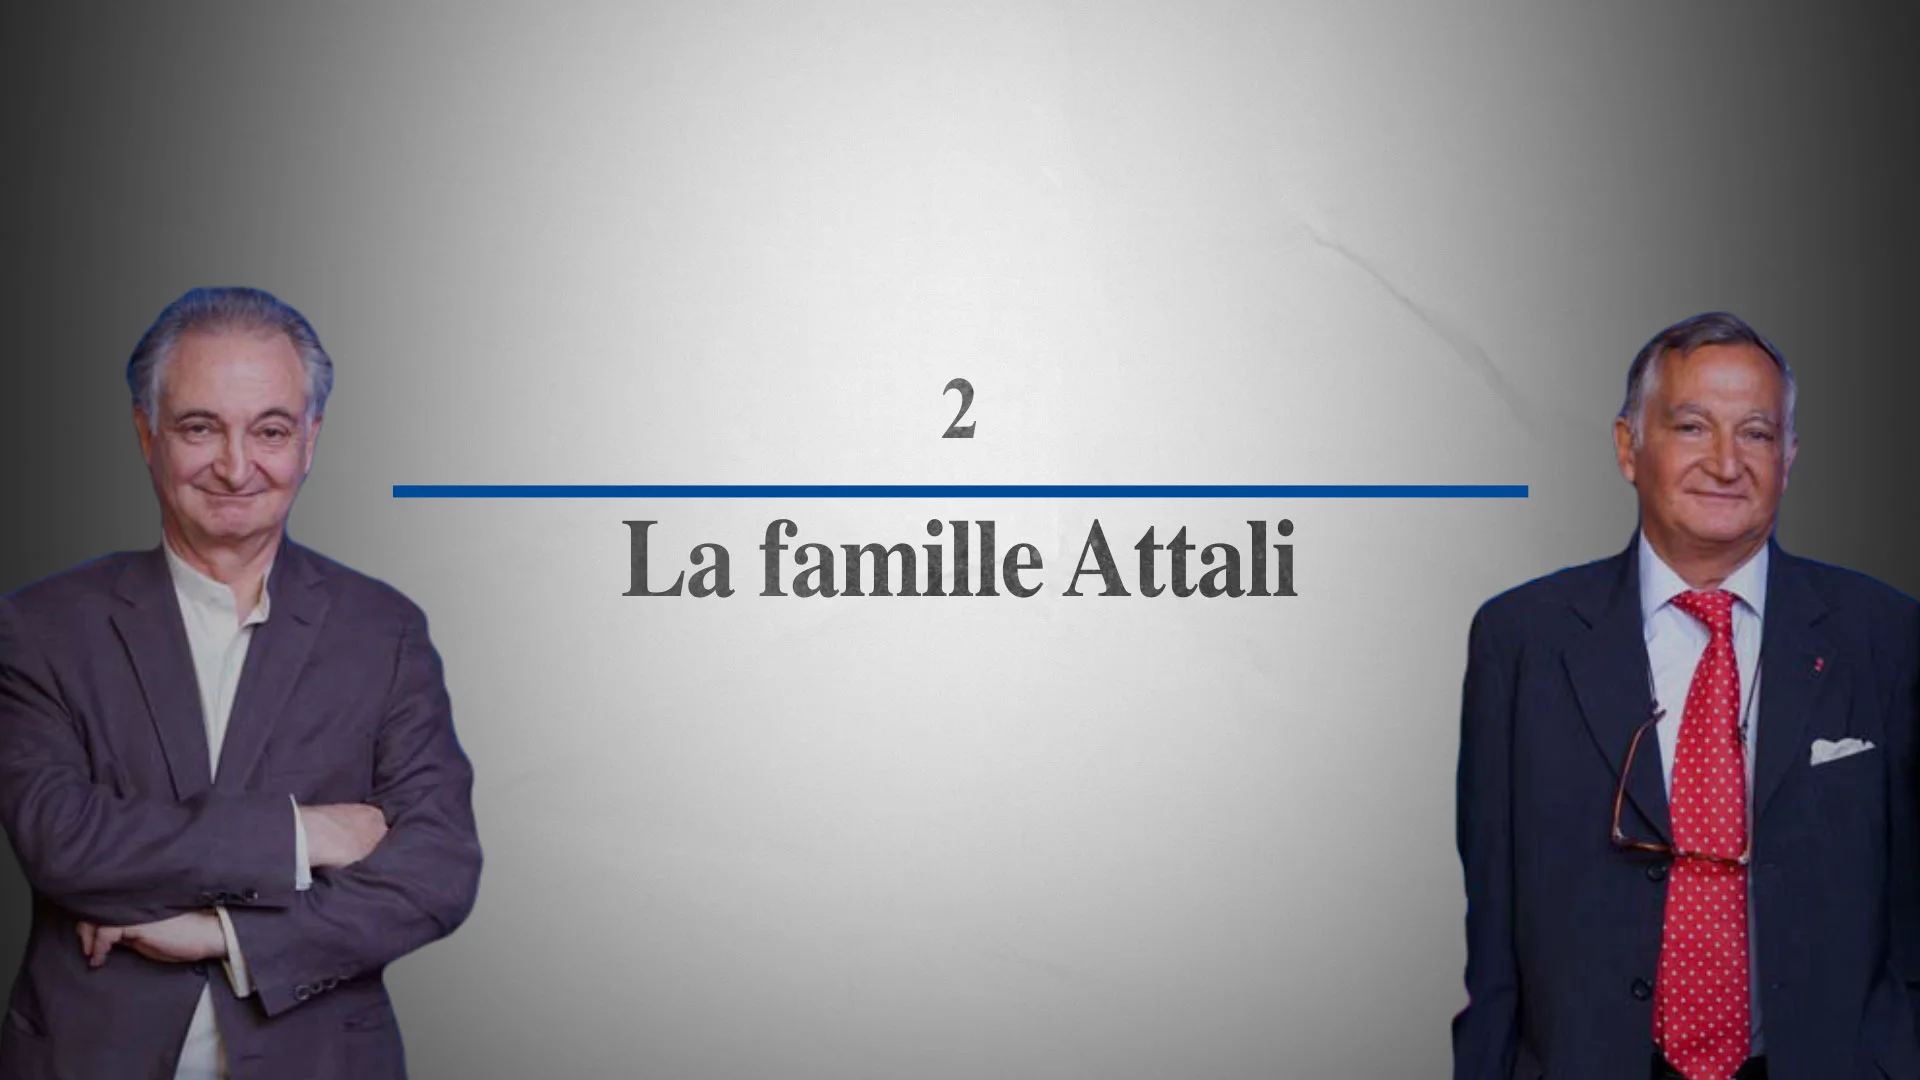 La famille Attali – De Mitterrand à Macron : 40 ans de pouvoir profond [Chapitre 2]